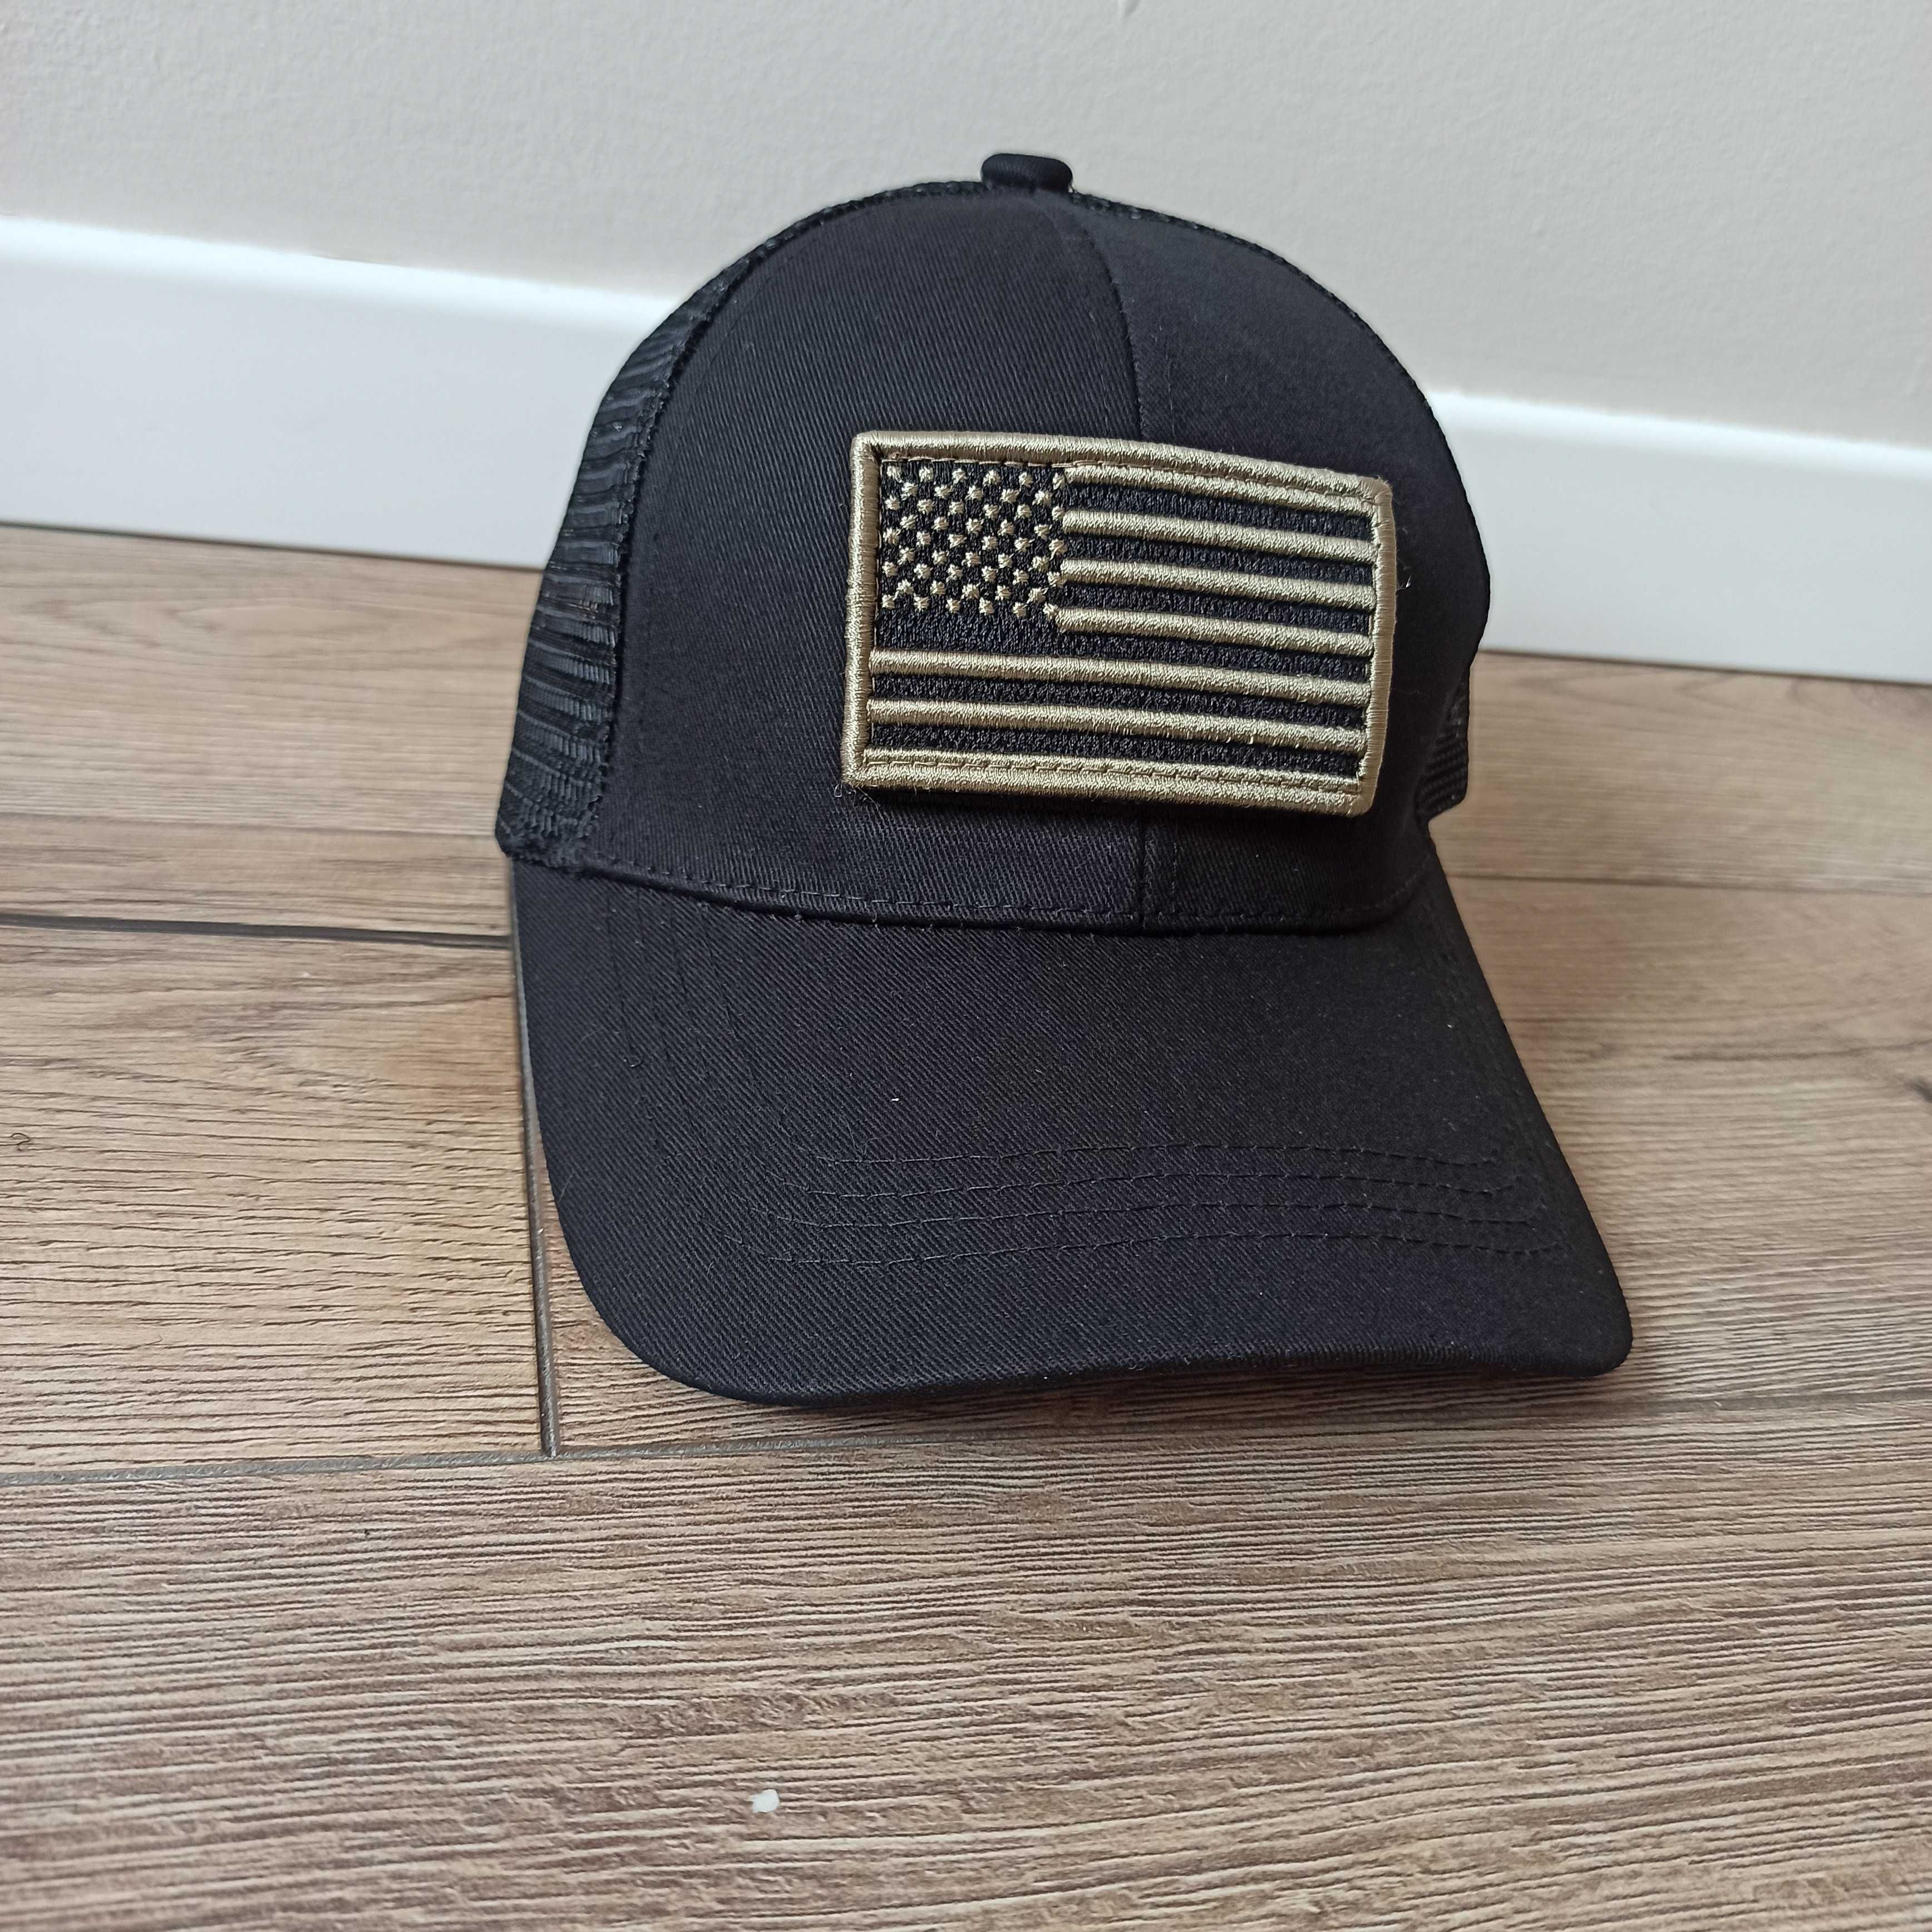 Przewiewna czapka daszek wzór wojskowy flaga amerykańska rzep CZARNY